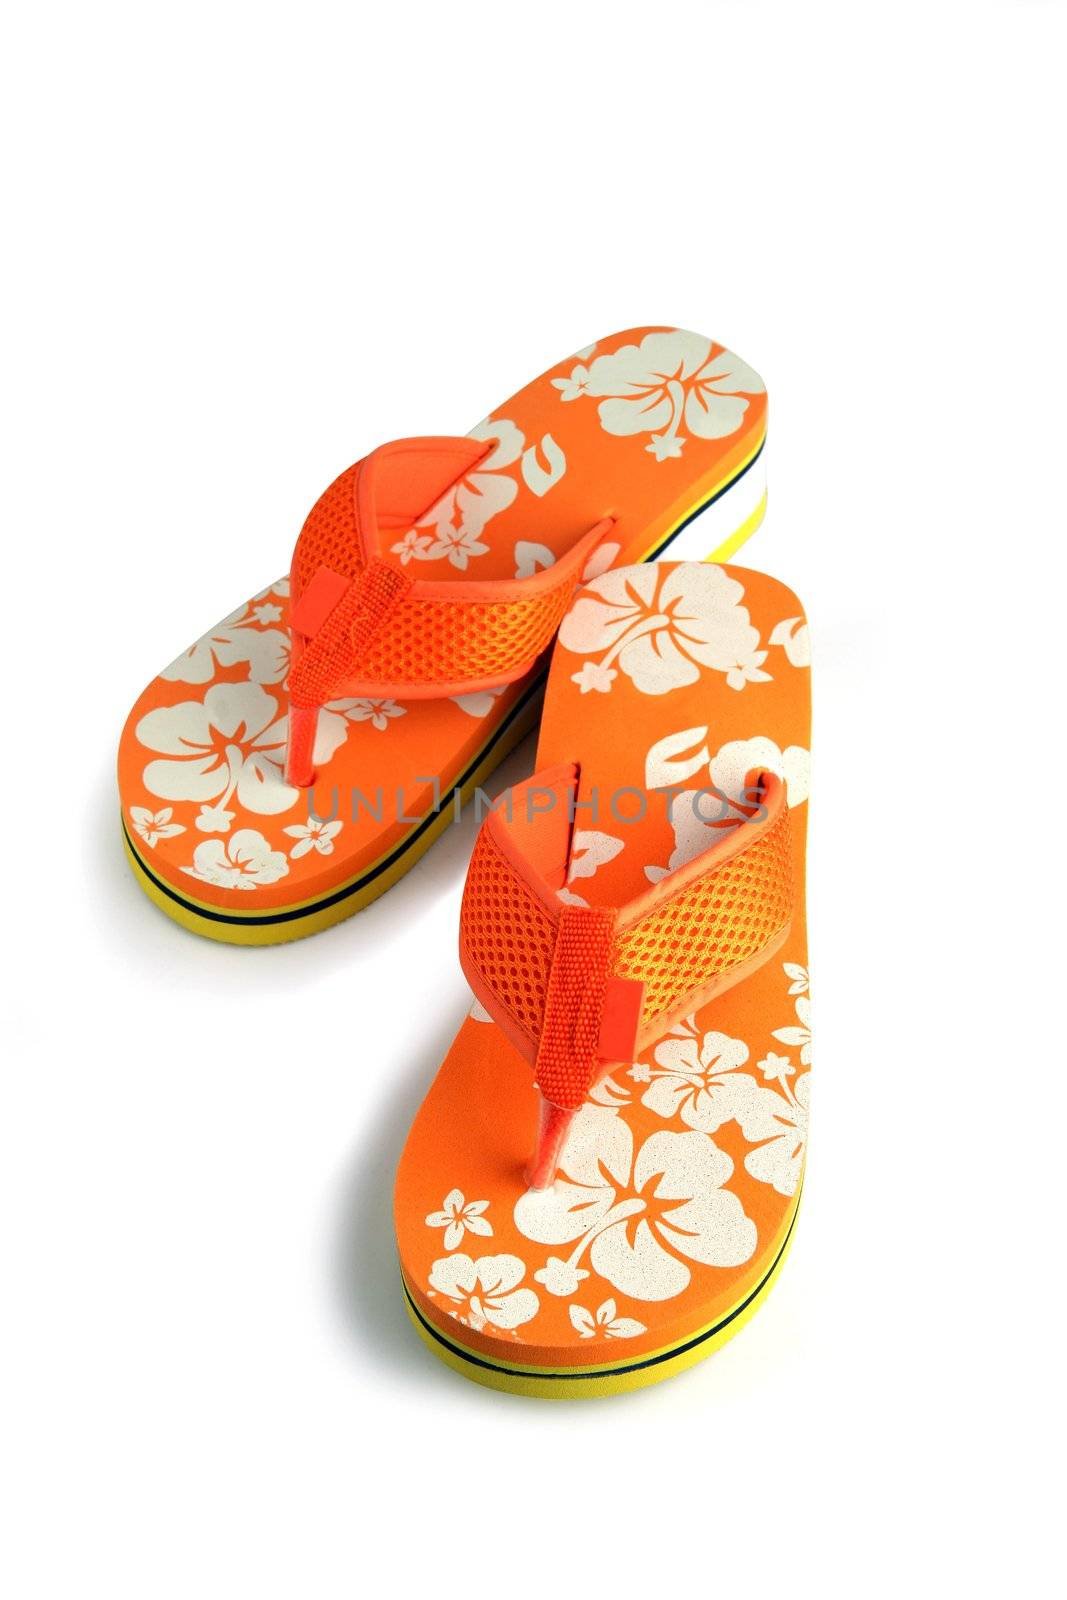 Orange flip-flops by phovoir